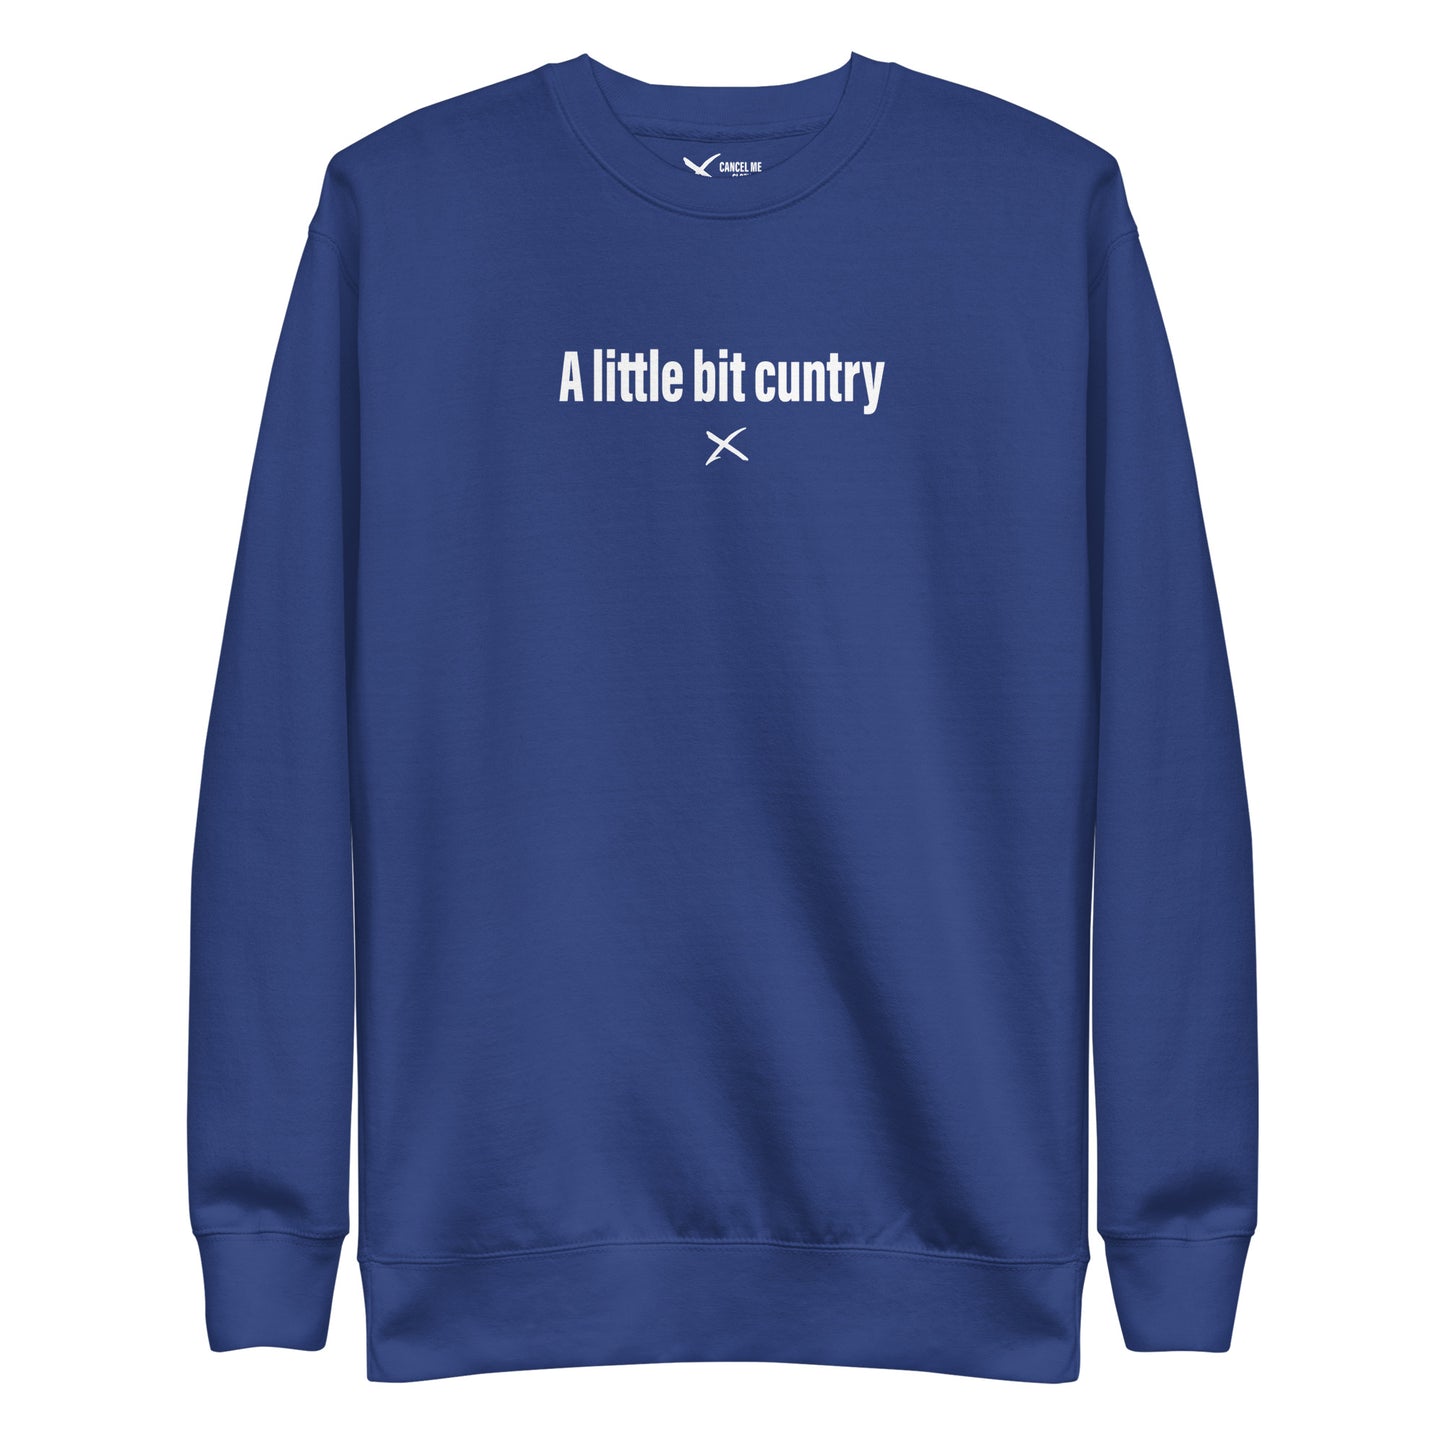 A little bit cuntry - Sweatshirt